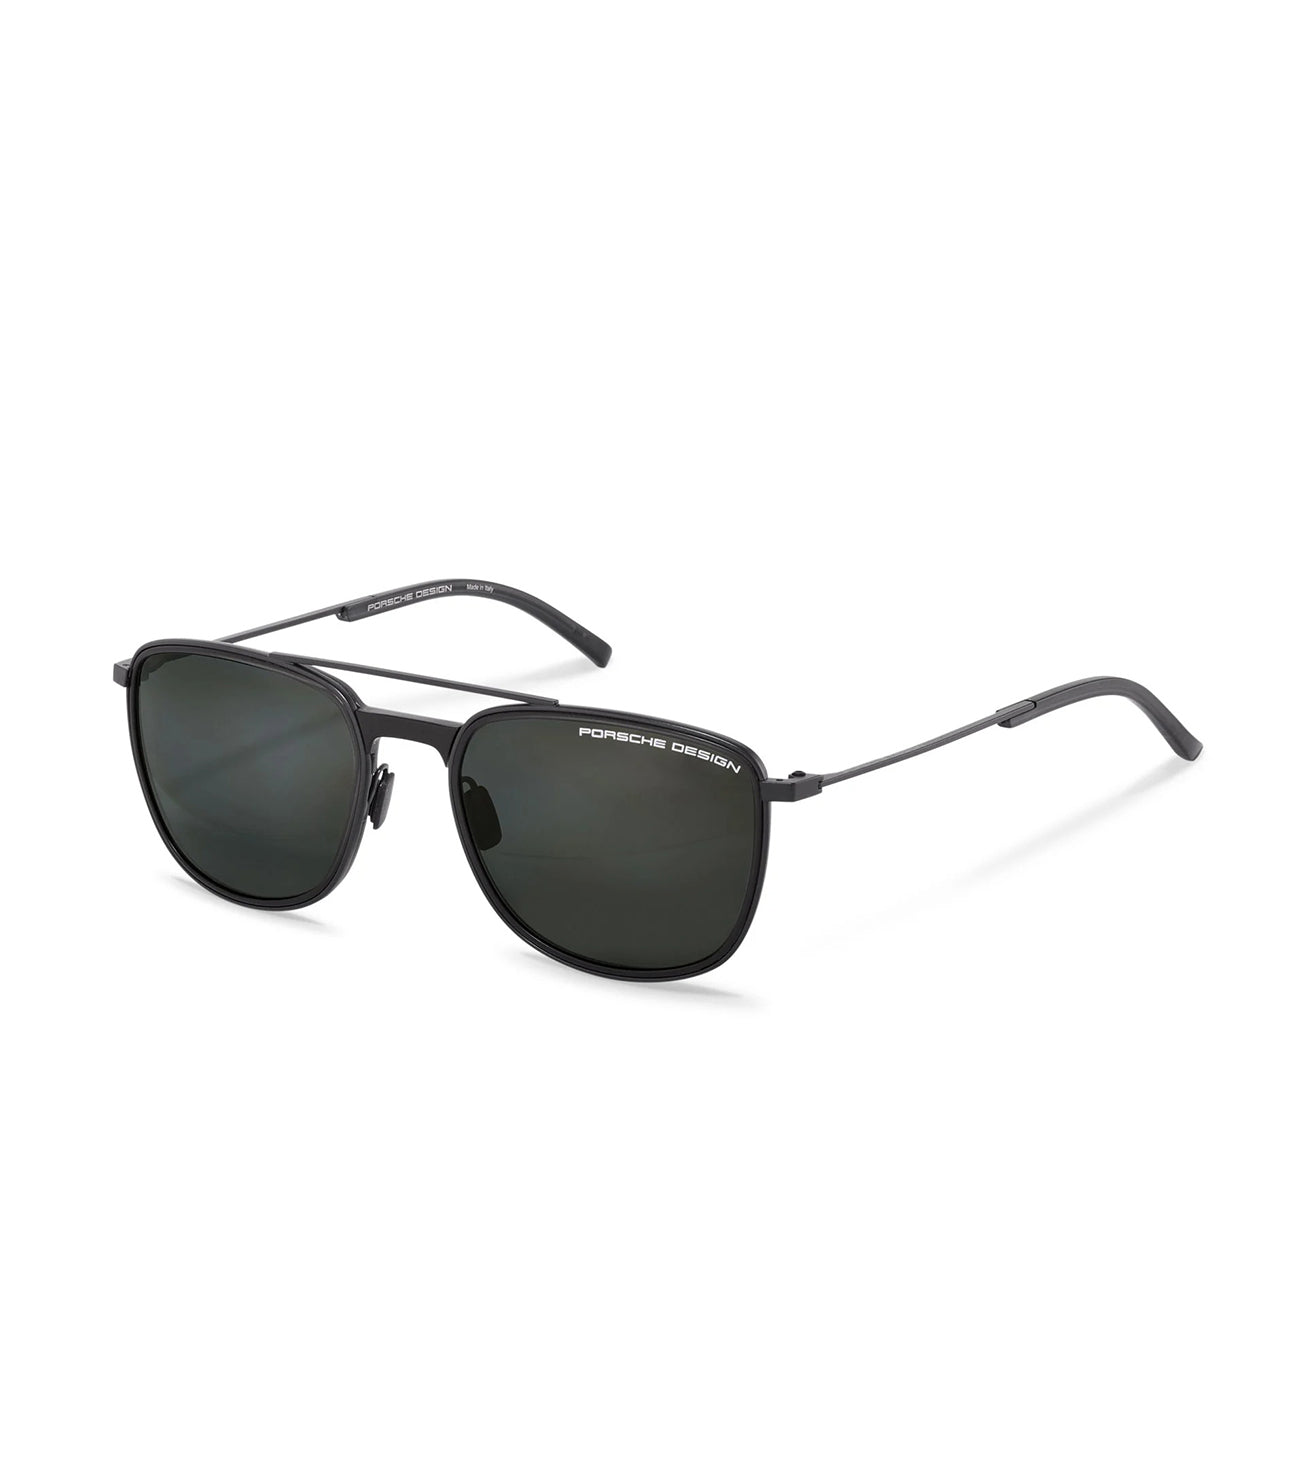 Porsche Design Men's Grey Square Sunglasses